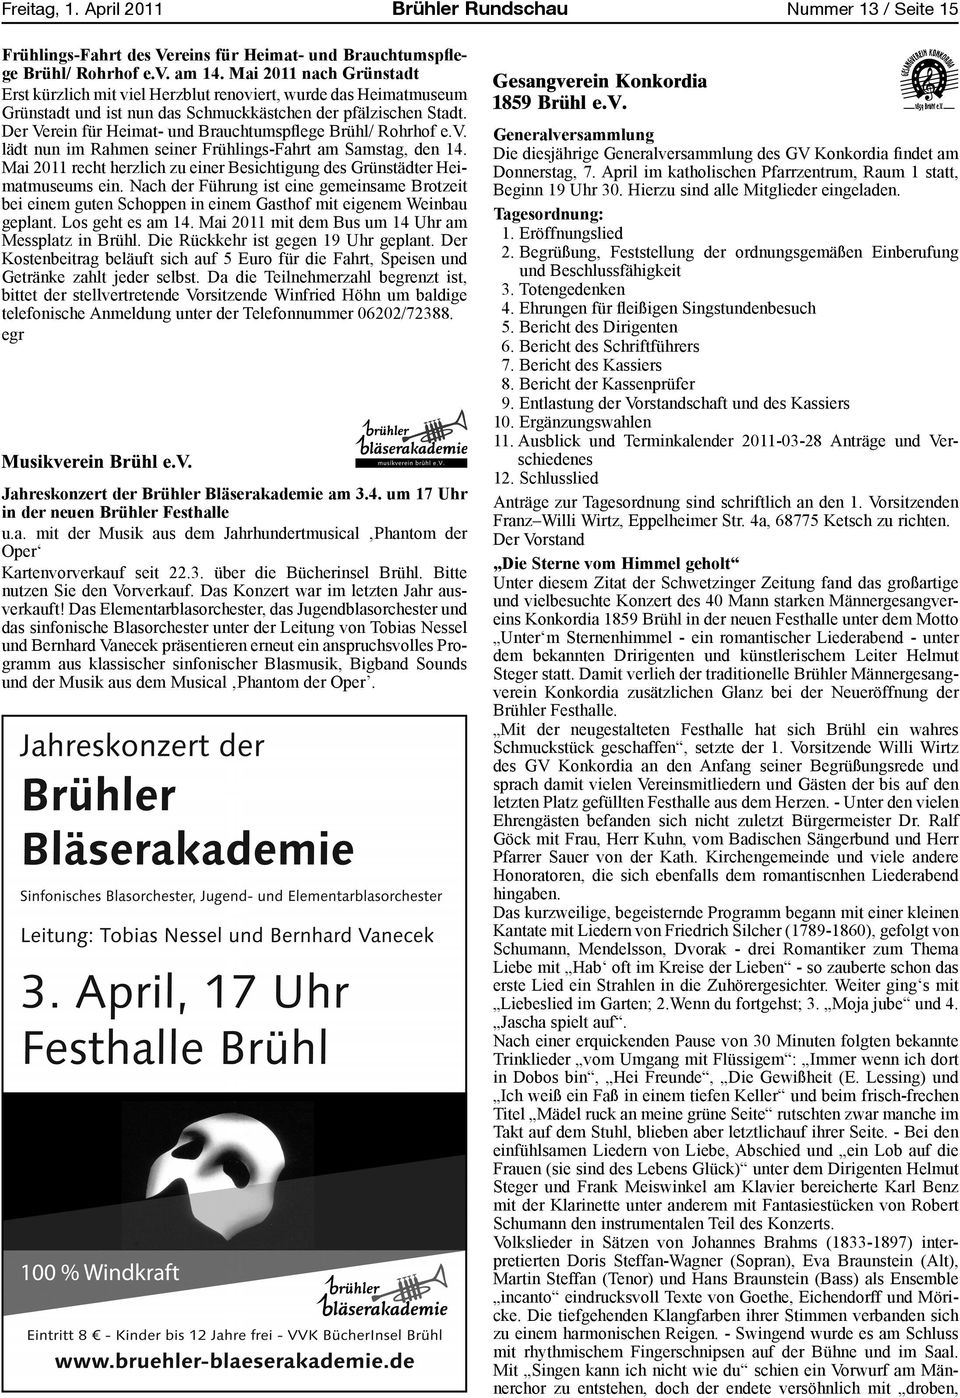 Der Verein für Heimat- und Brauchtumspflege Brühl/ Rohrhof e.v. lädt nun im Rahmen seiner Frühlings-Fahrt am Samstag, den 14.